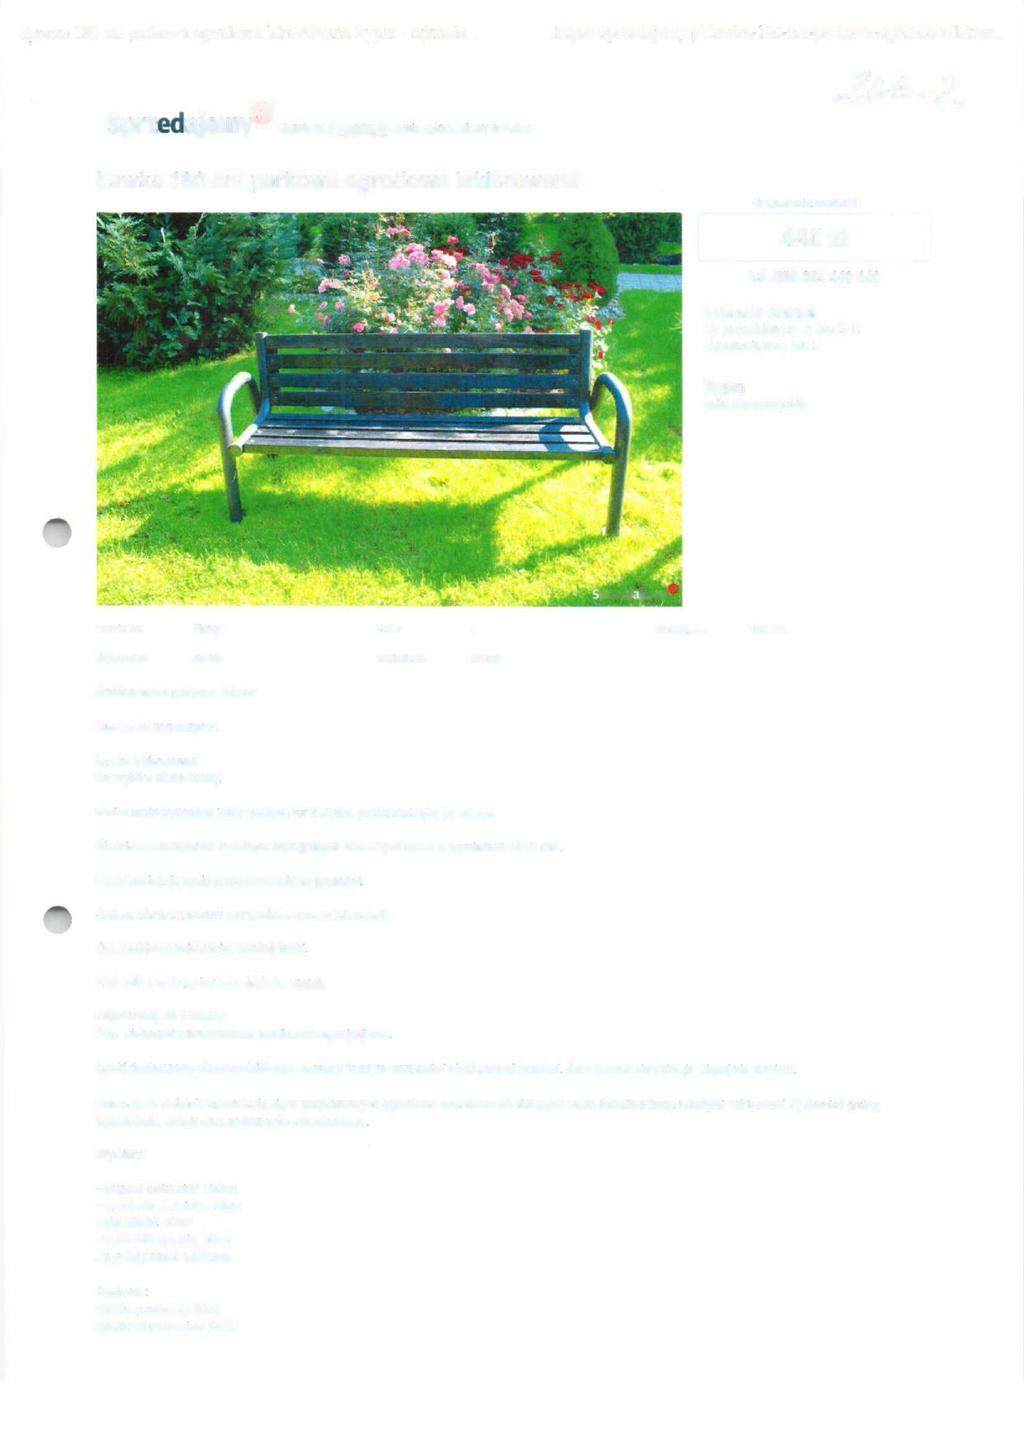 ~awka 180 cm parkowa ogrodowa lakierowana Rypin - Sprzeda... https://sprzedajemy.pl/lawka-180-cm-parkowa-ogrodowa-lakier.